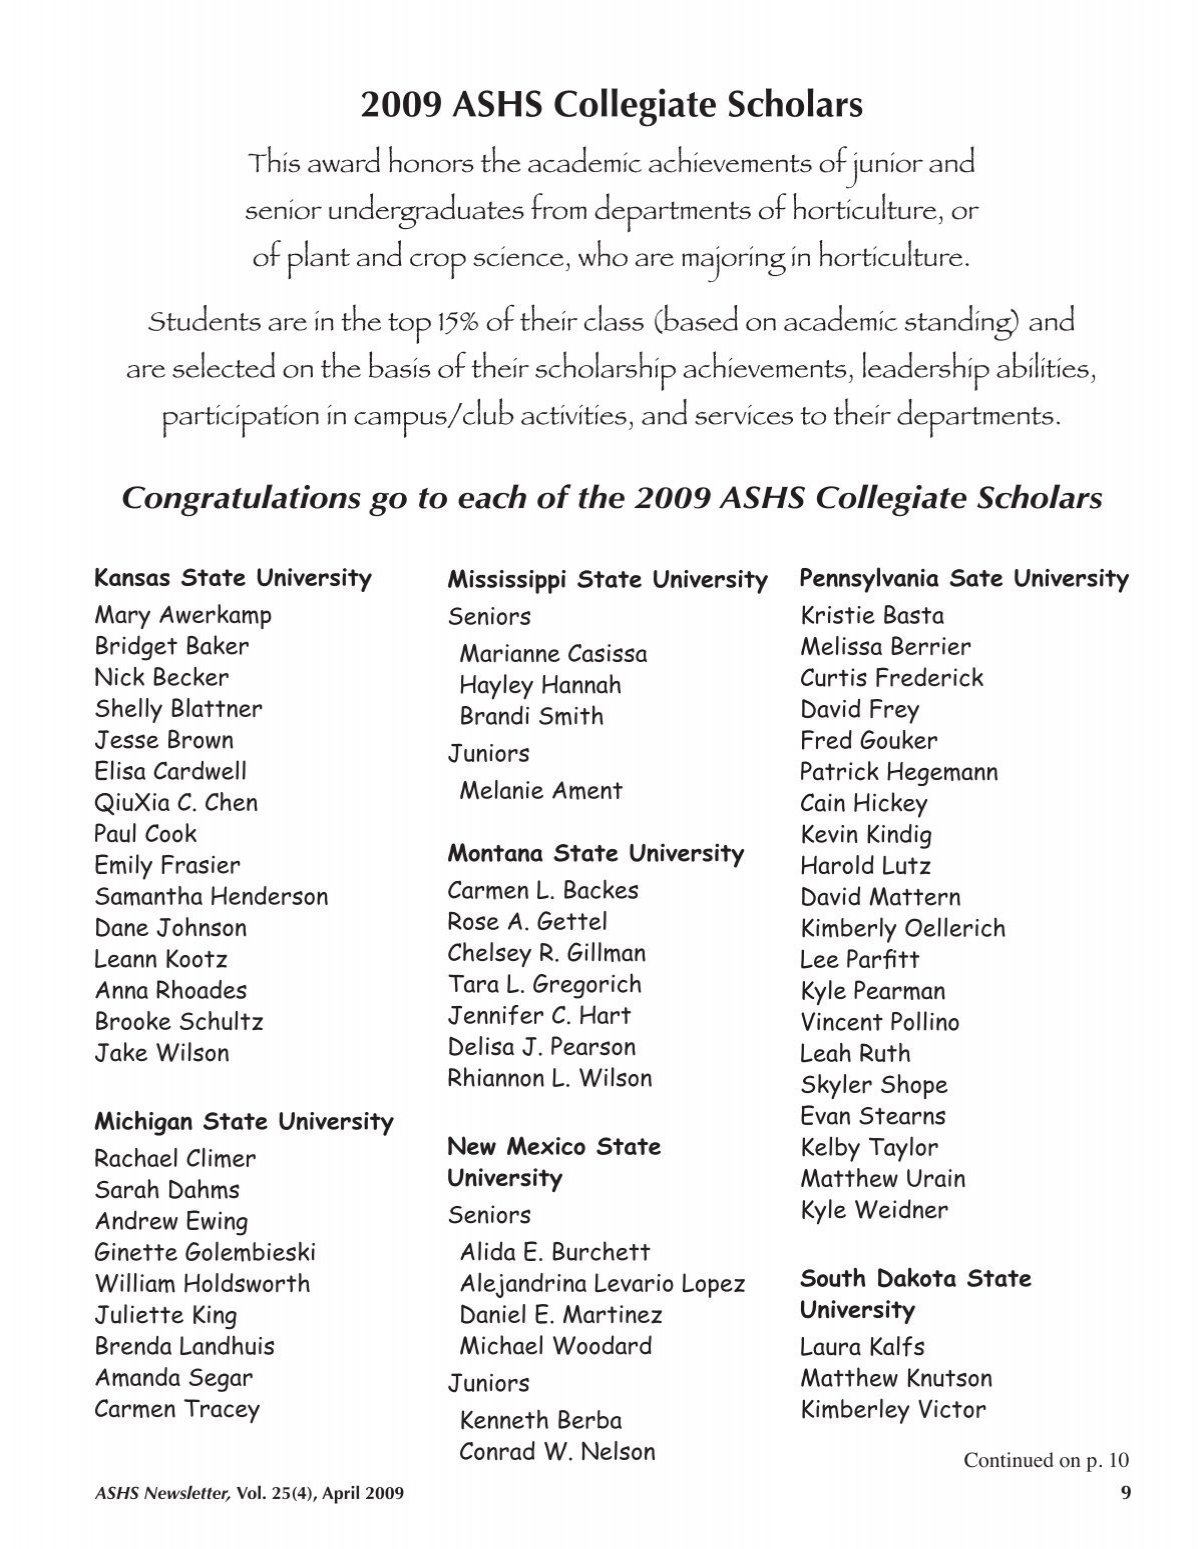 ASHS Honors Collegiate Scholars for 2006